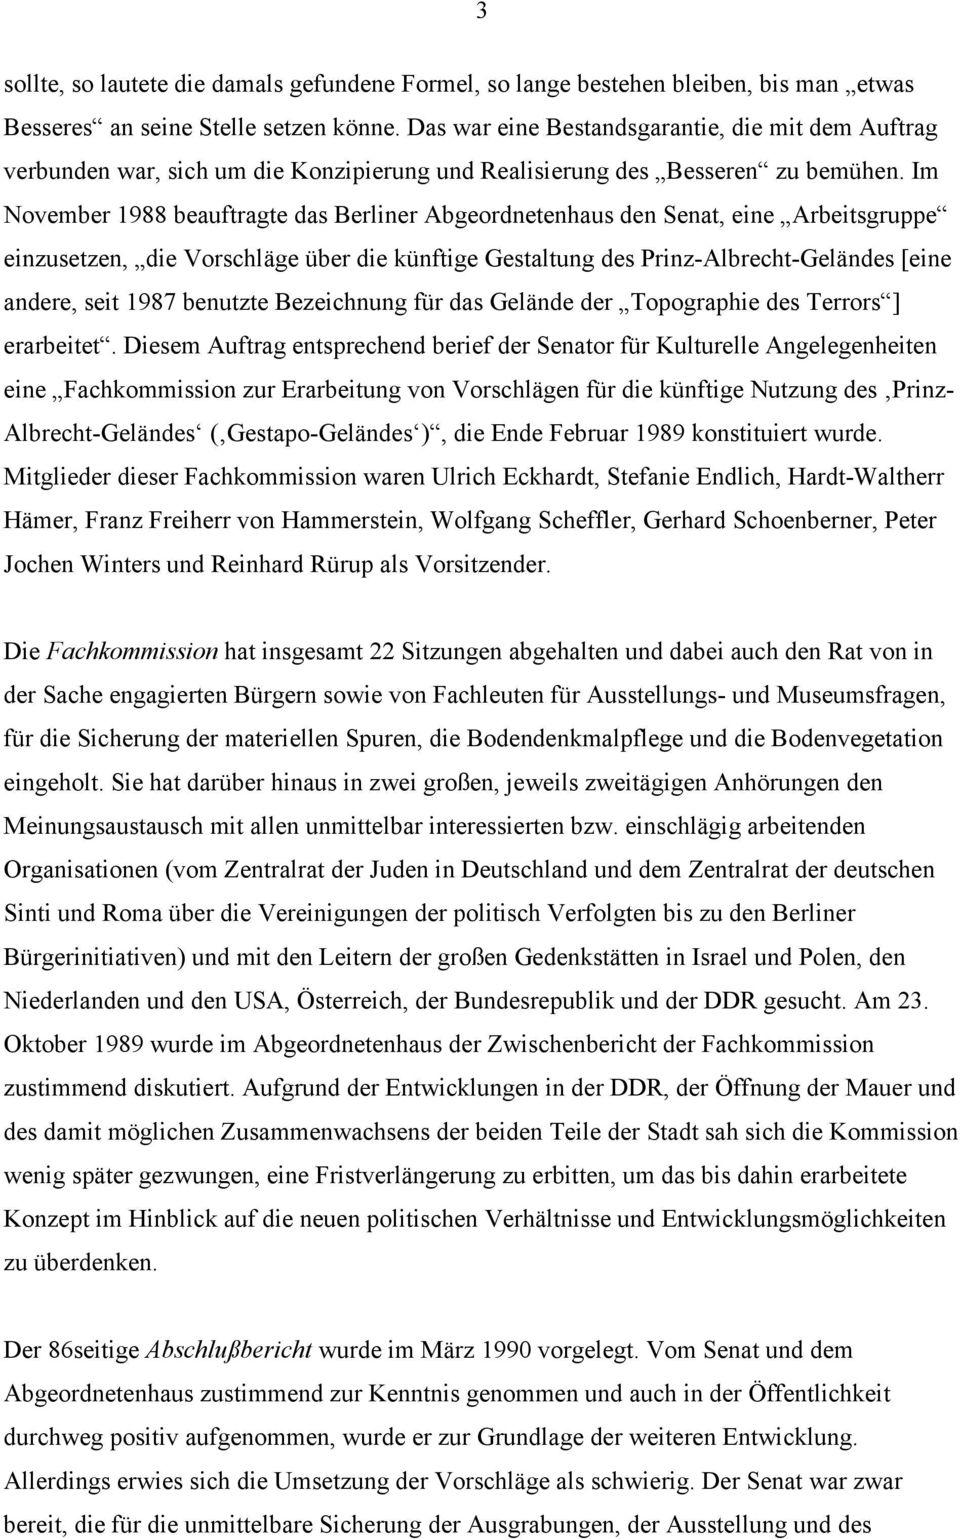 Im November 1988 beauftragte das Berliner Abgeordnetenhaus den Senat, eine Arbeitsgruppe einzusetzen, die Vorschläge über die künftige Gestaltung des Prinz-Albrecht-Geländes [eine andere, seit 1987